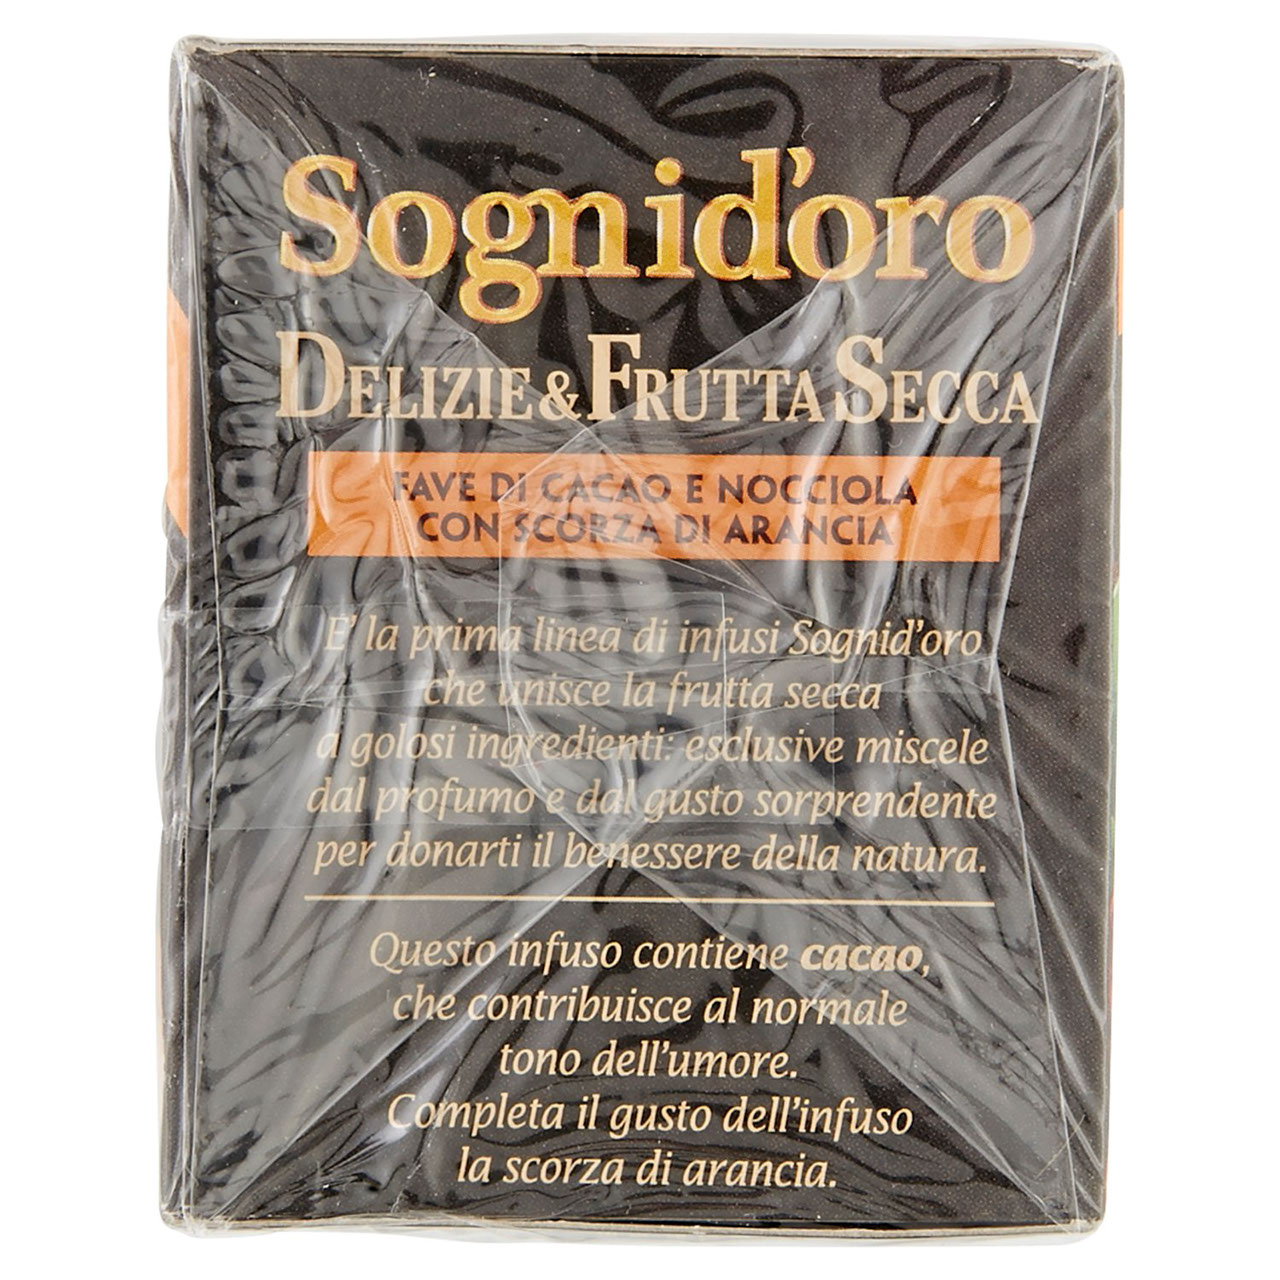 Sognid'oro Delizie & Frutta Secca Fave di Cacao e Nocciola con Scorza di Arancia 16 x 2,5 g